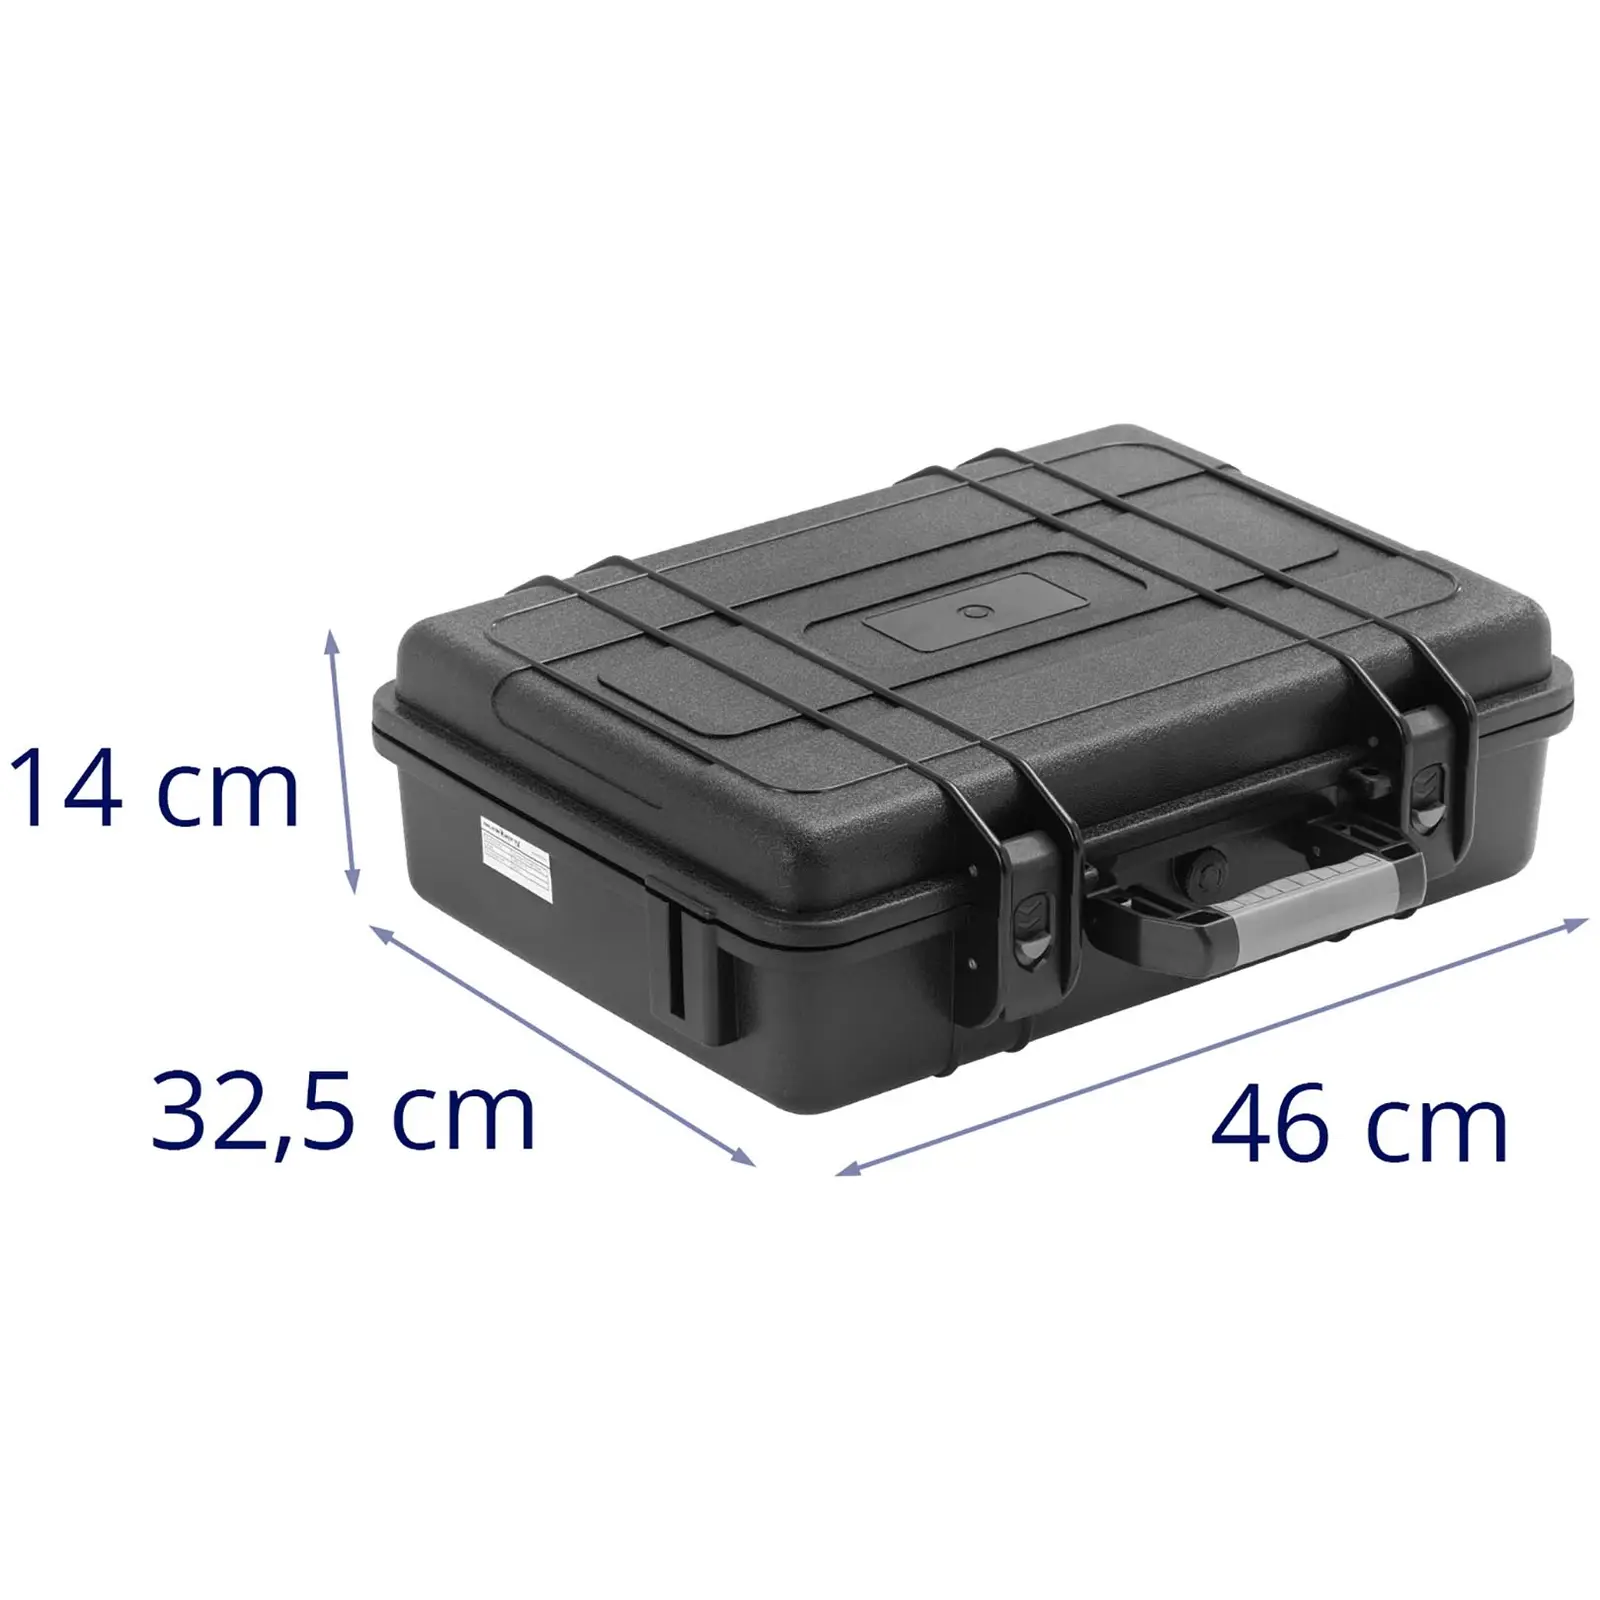 Σκληρή θήκη κάμερας - αδιάβροχη - 15 l - μαύρο - 46,3 x 36,3 x 13,9 cm